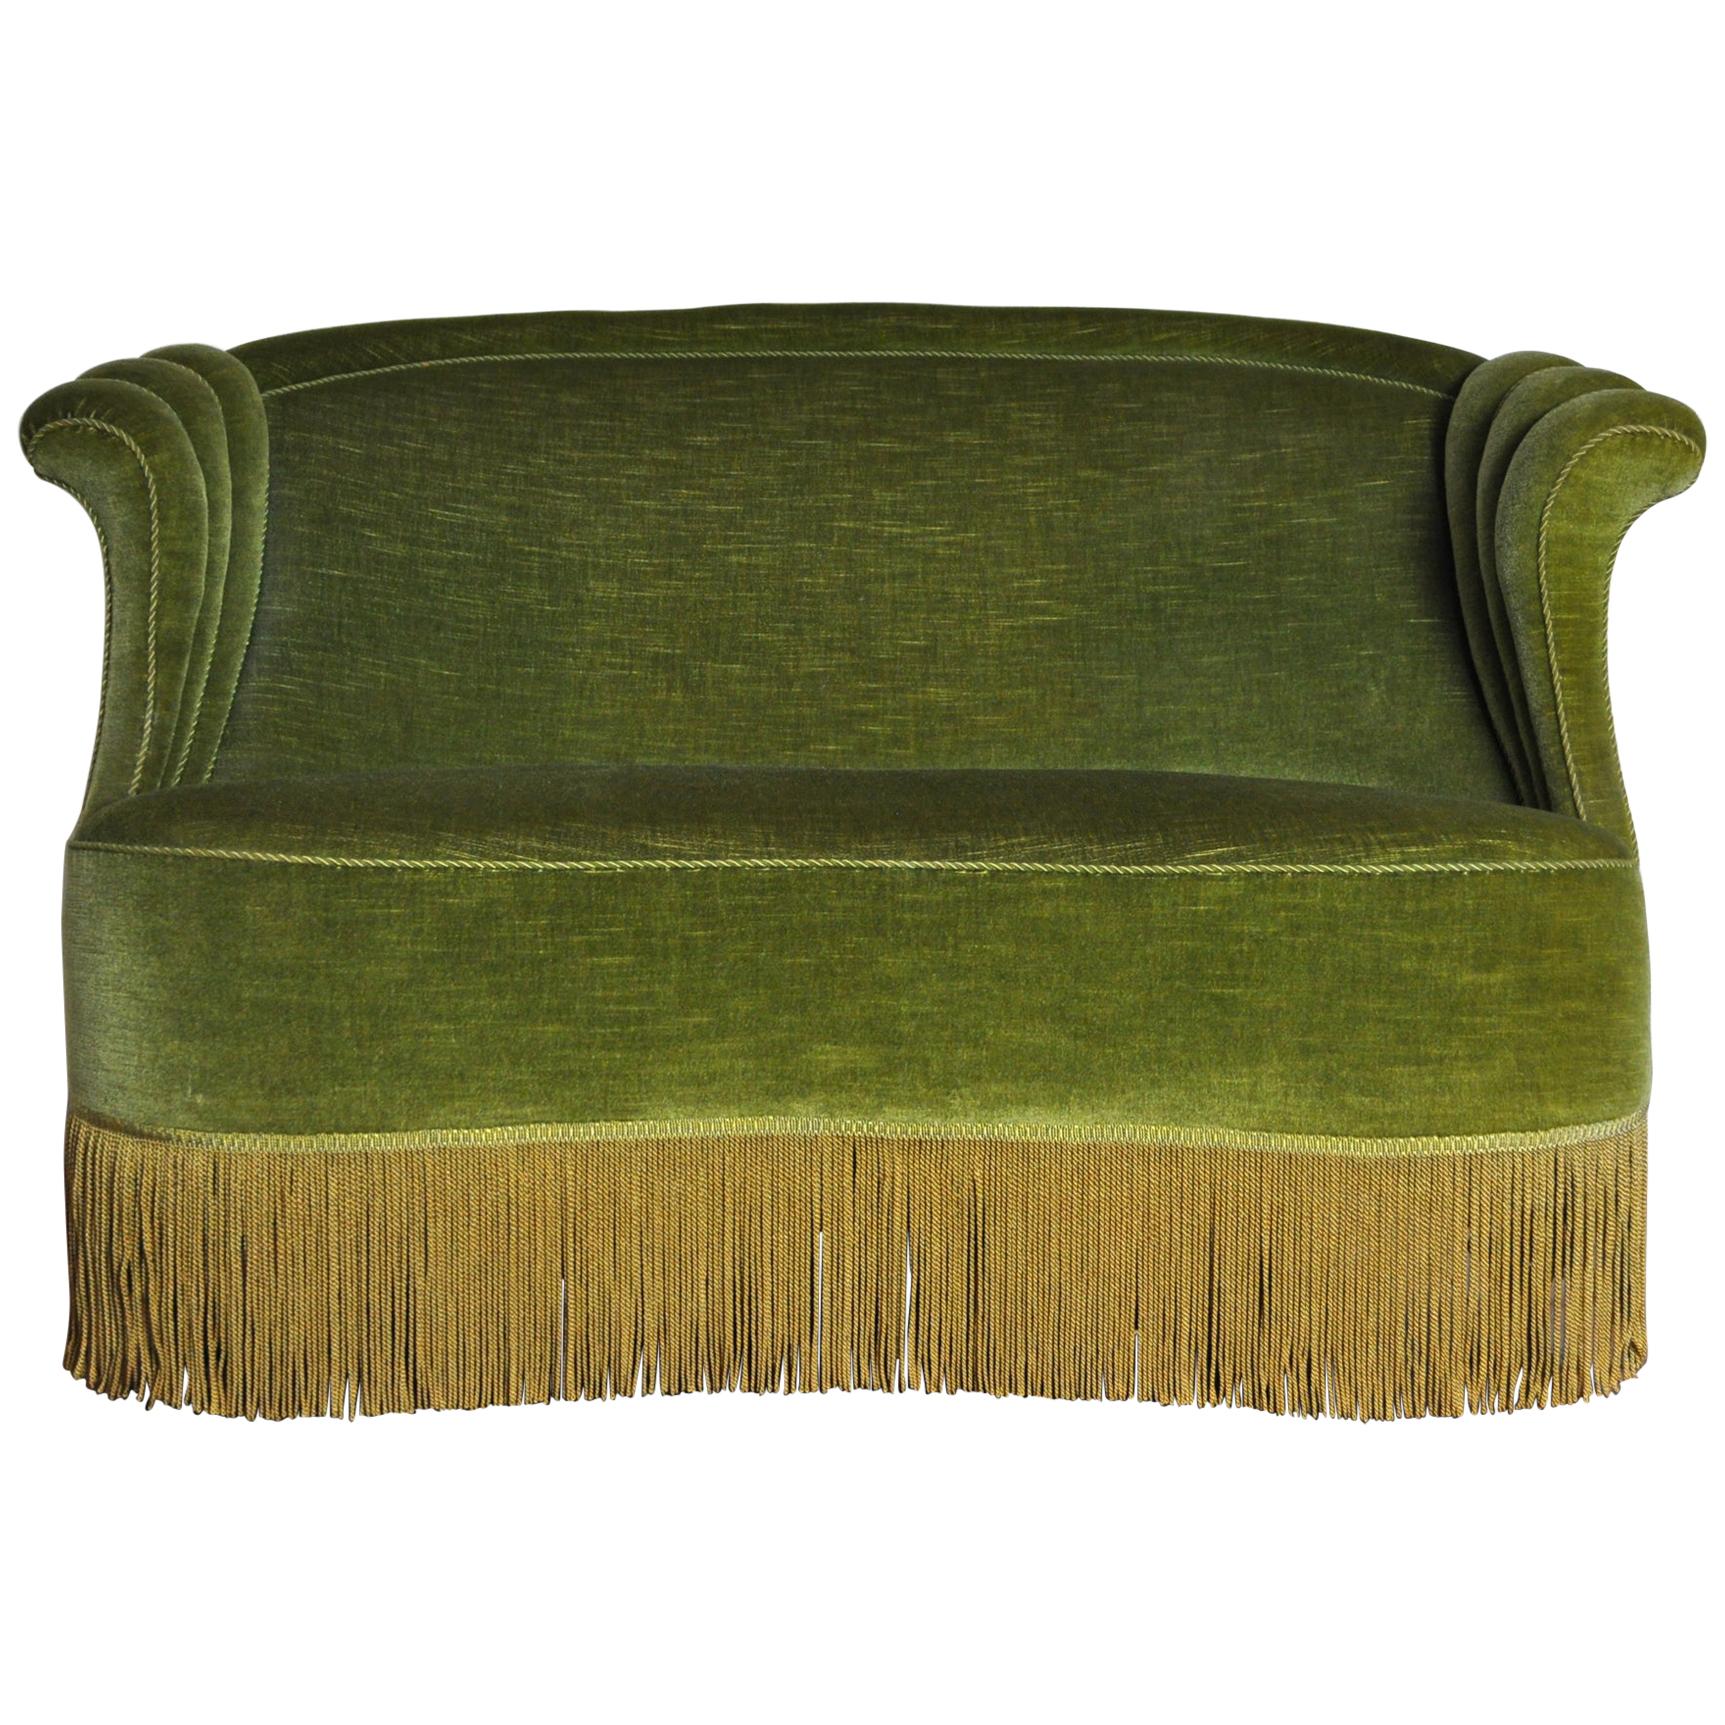 Danish Art Deco Sofa in Green Velvet, 1920s-1930s at 1stDibs | danish art  deco furniture, green art deco couch, 1920s green